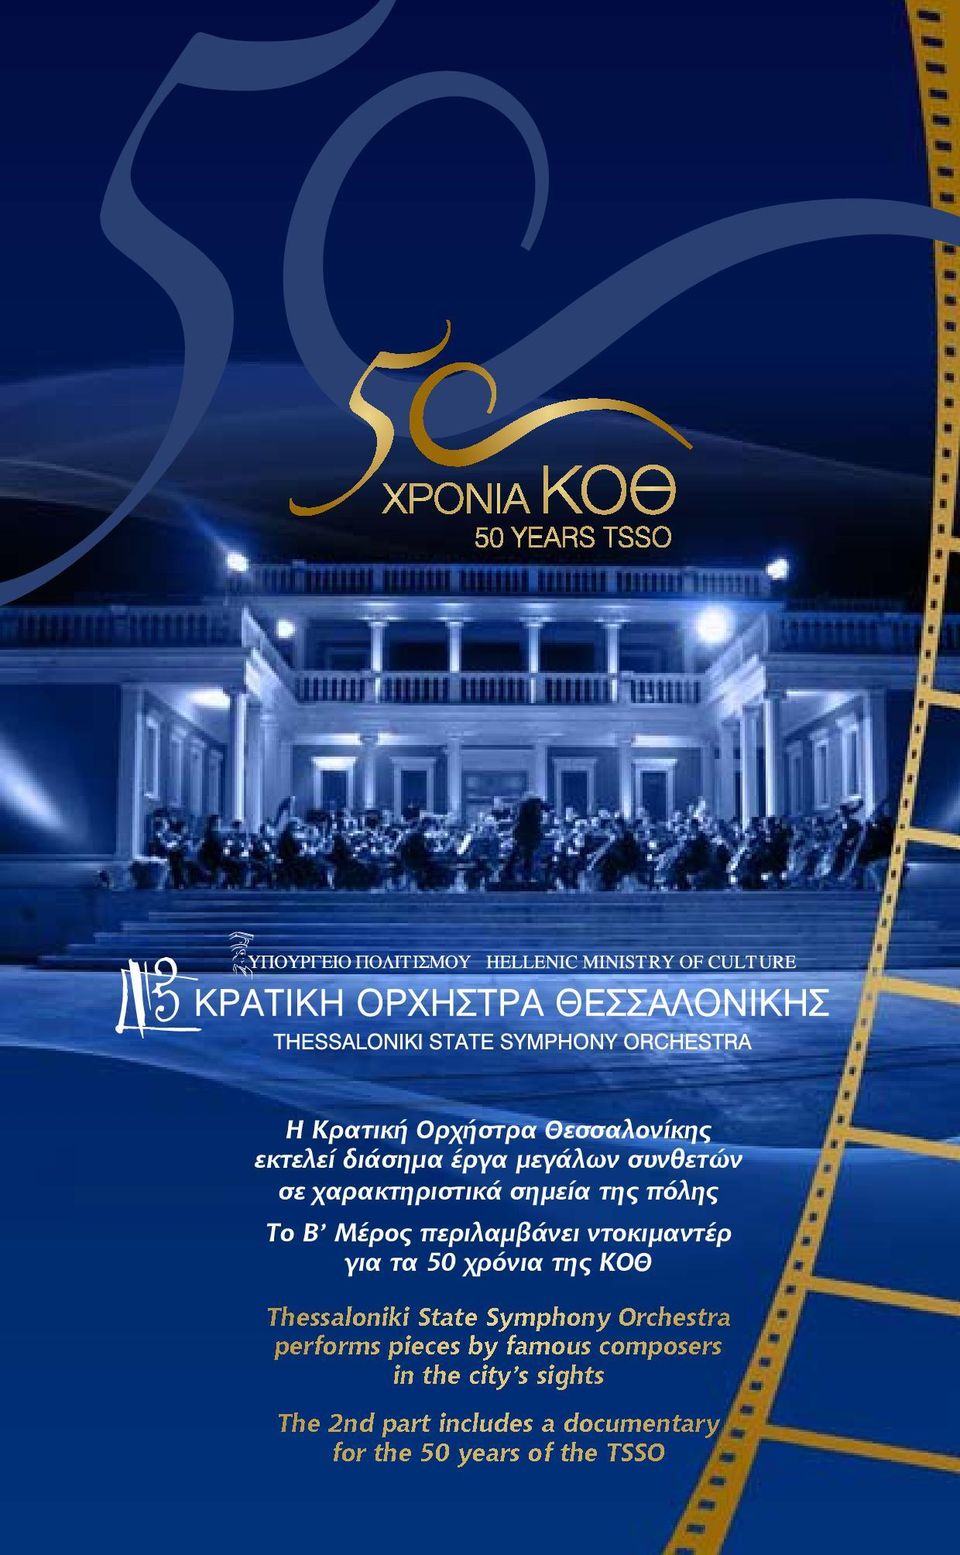 χρόνια της ΚΟΘ Thessaloniki State Symphony Orchestra performs pieces by famous